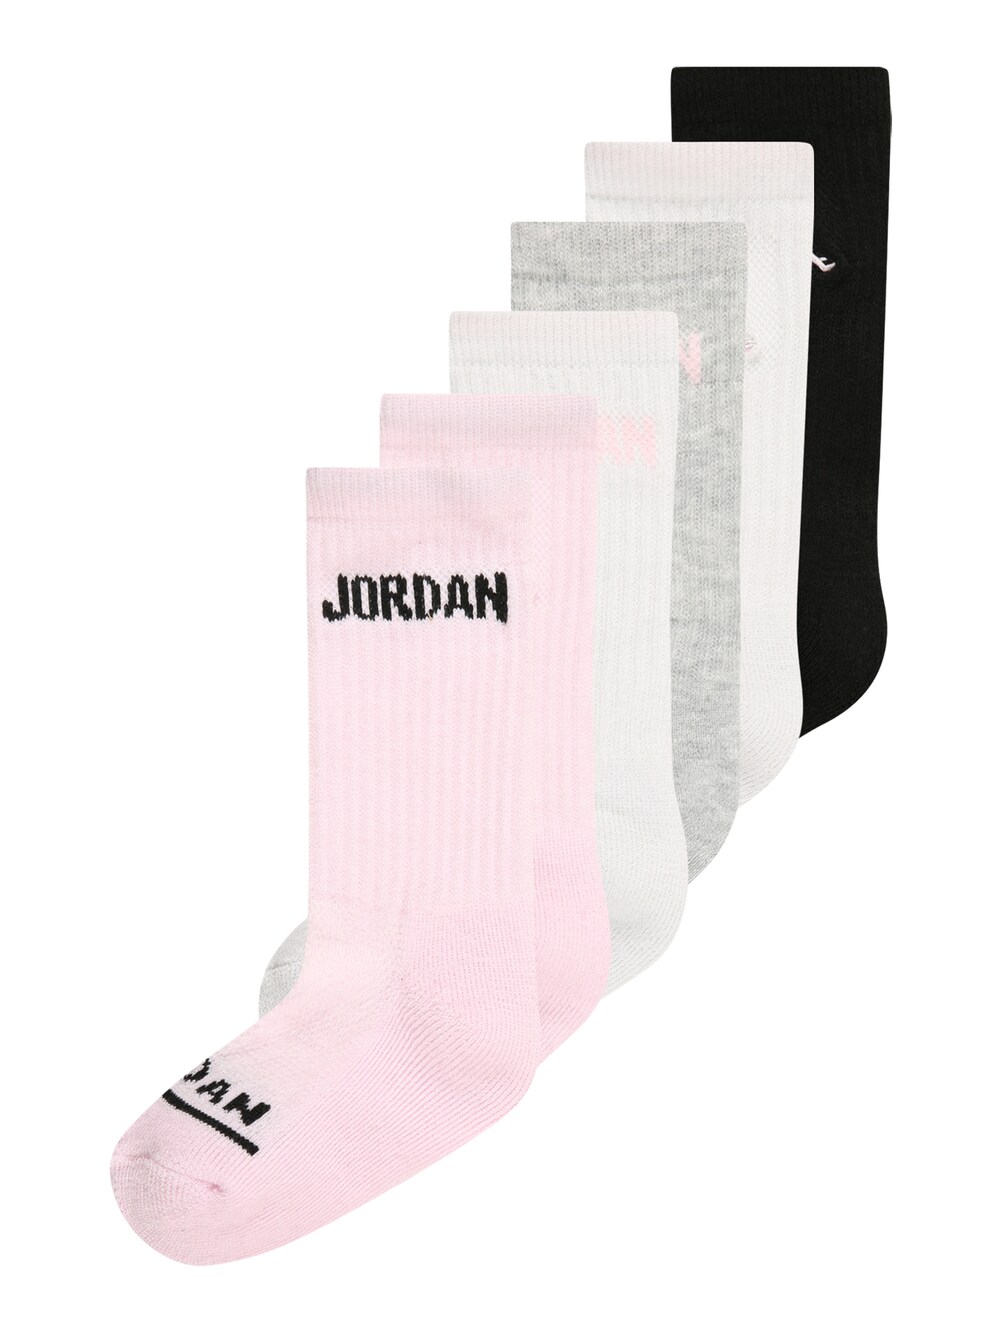 Носки Jordan, смешанные цвета носки h i s смешанные цвета